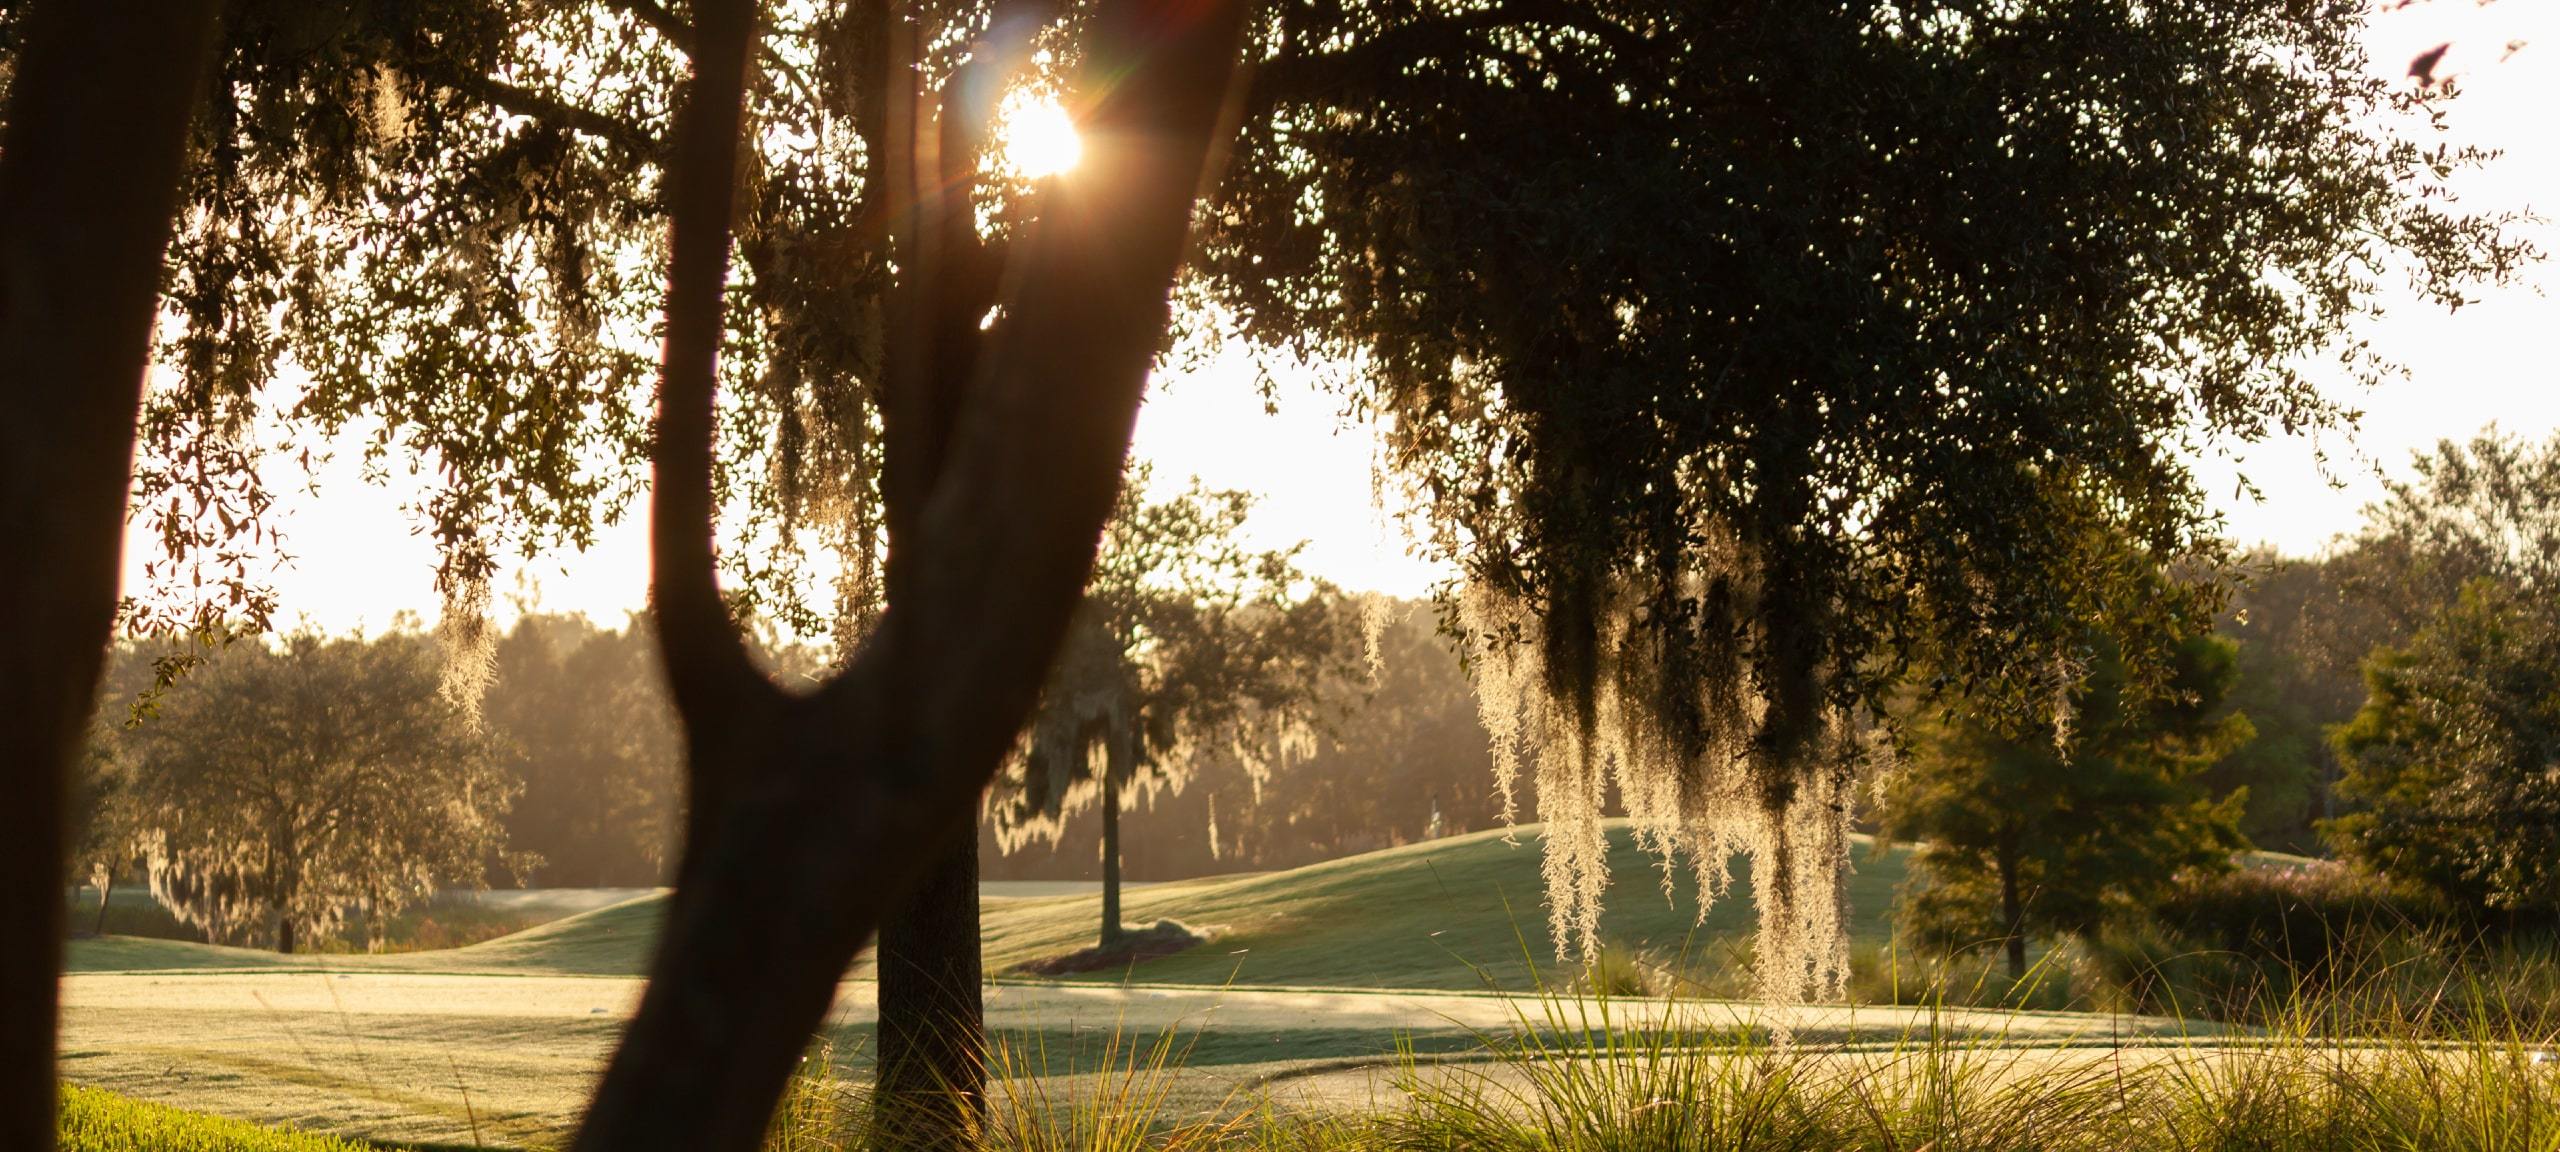 Sun through trees at golf course in Orlando, FL